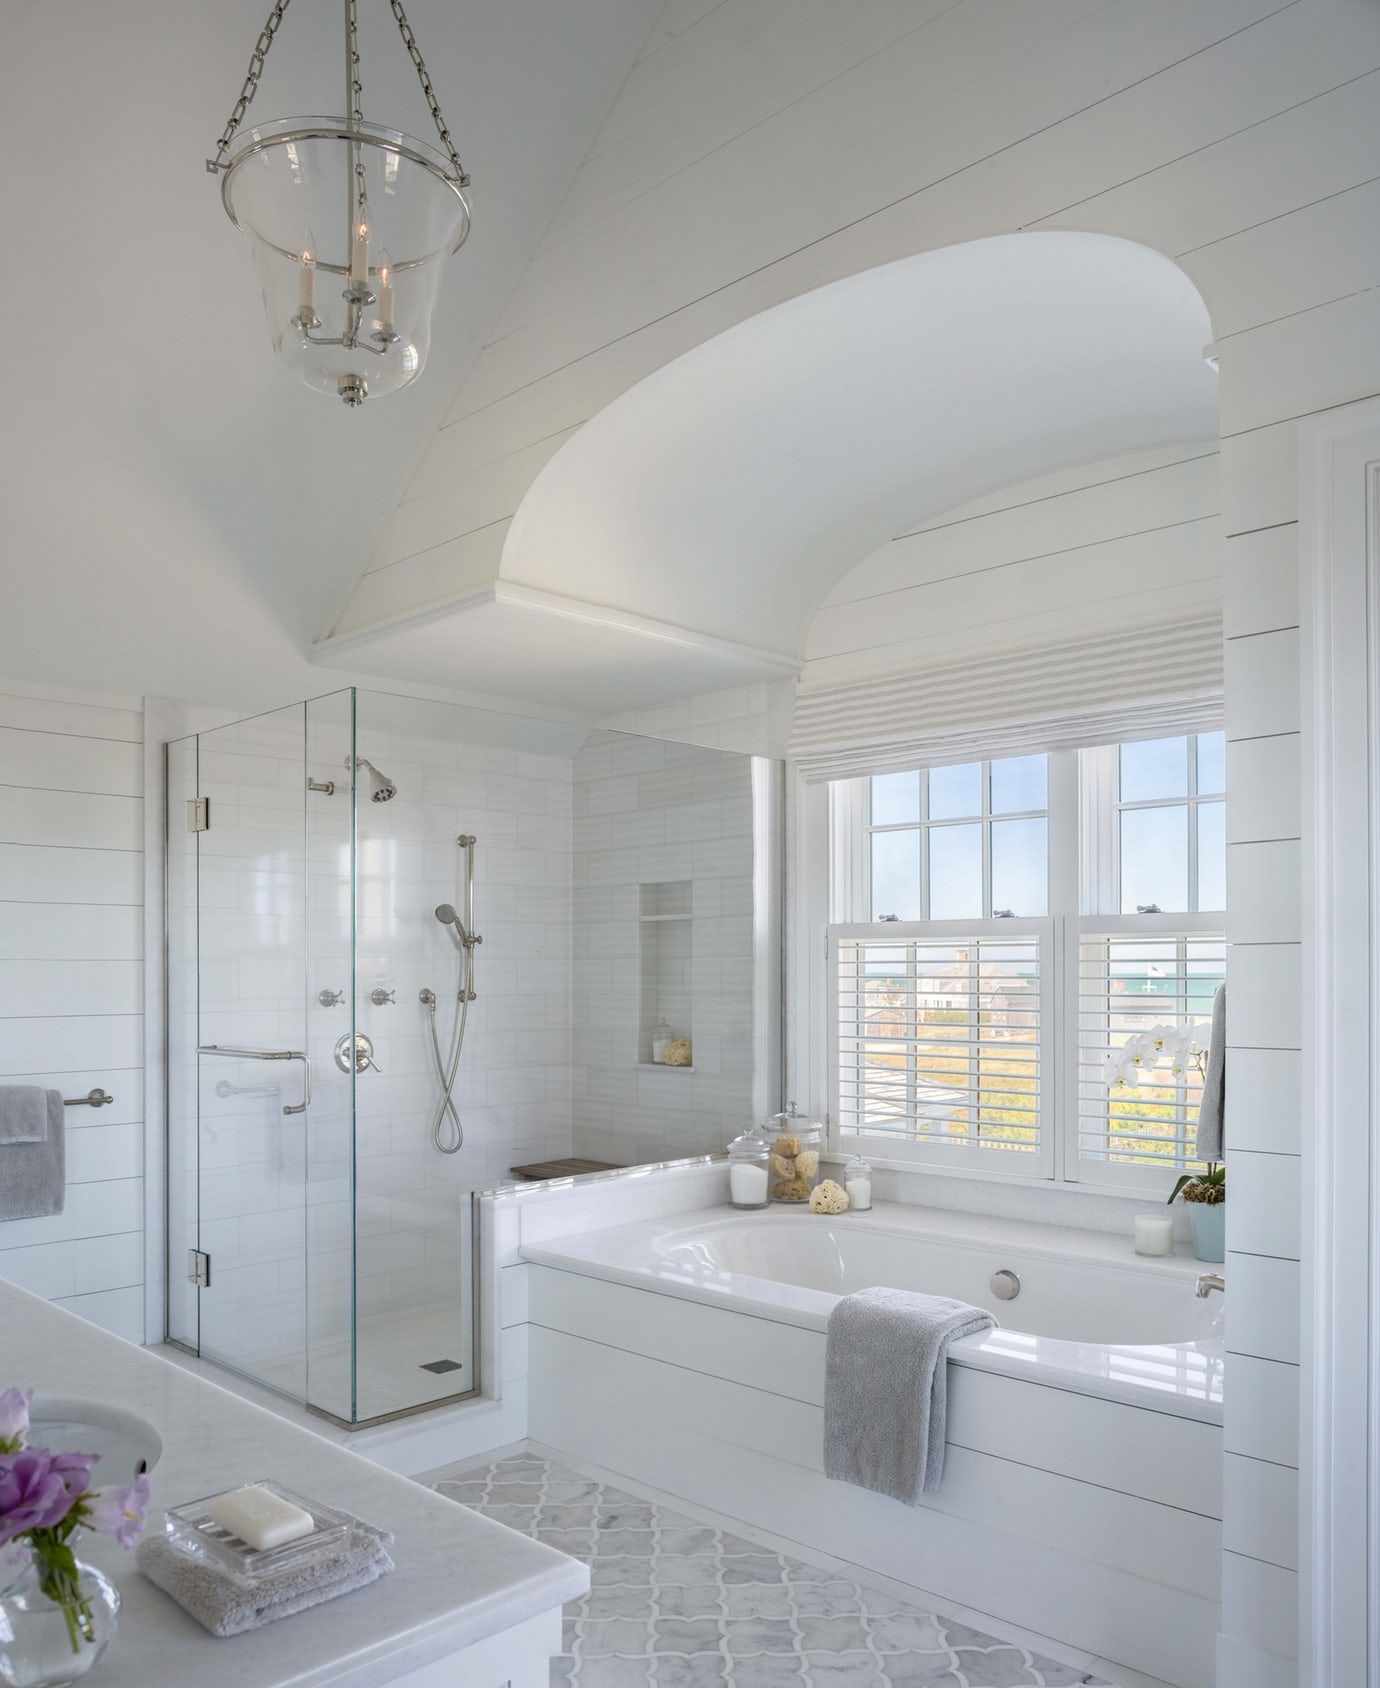 10 Coastal Bathroom Design Ideas For A Beachy Vibe